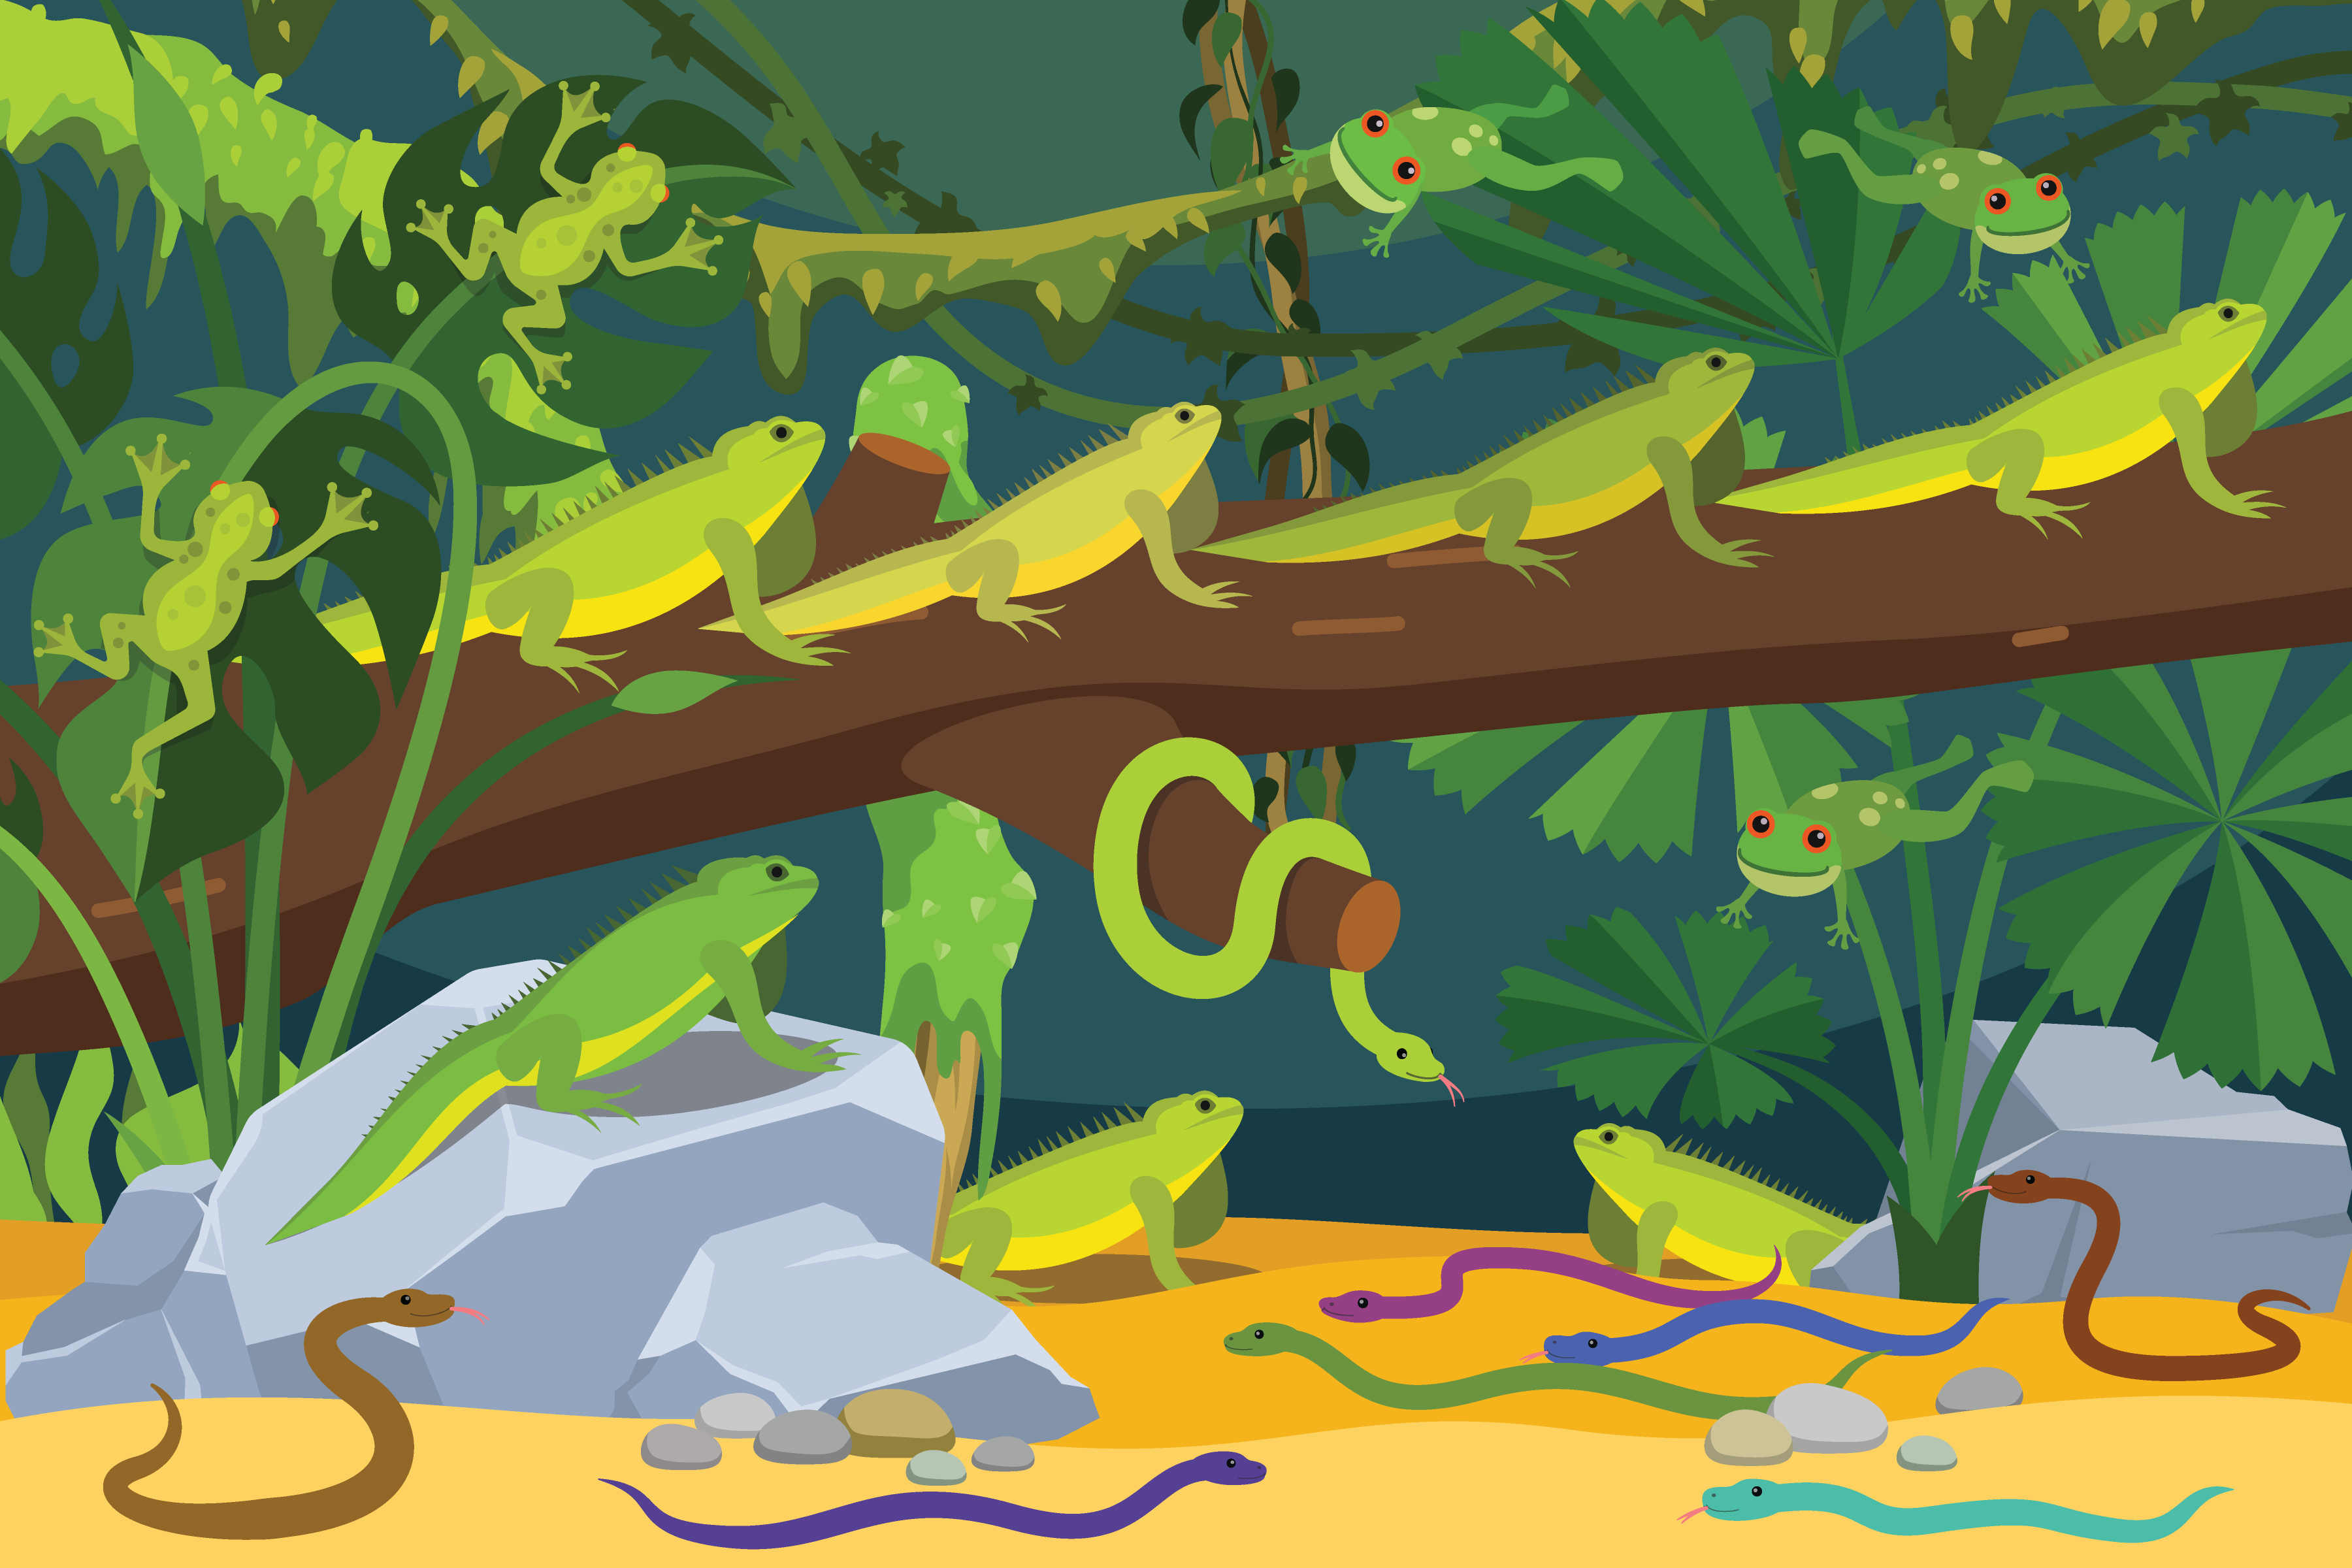 Dibujo de iguanas, ranas y serpientes de varios colores, rodeadas de plantas. 8 serpientes, 5 ranas y 7 iguanas.